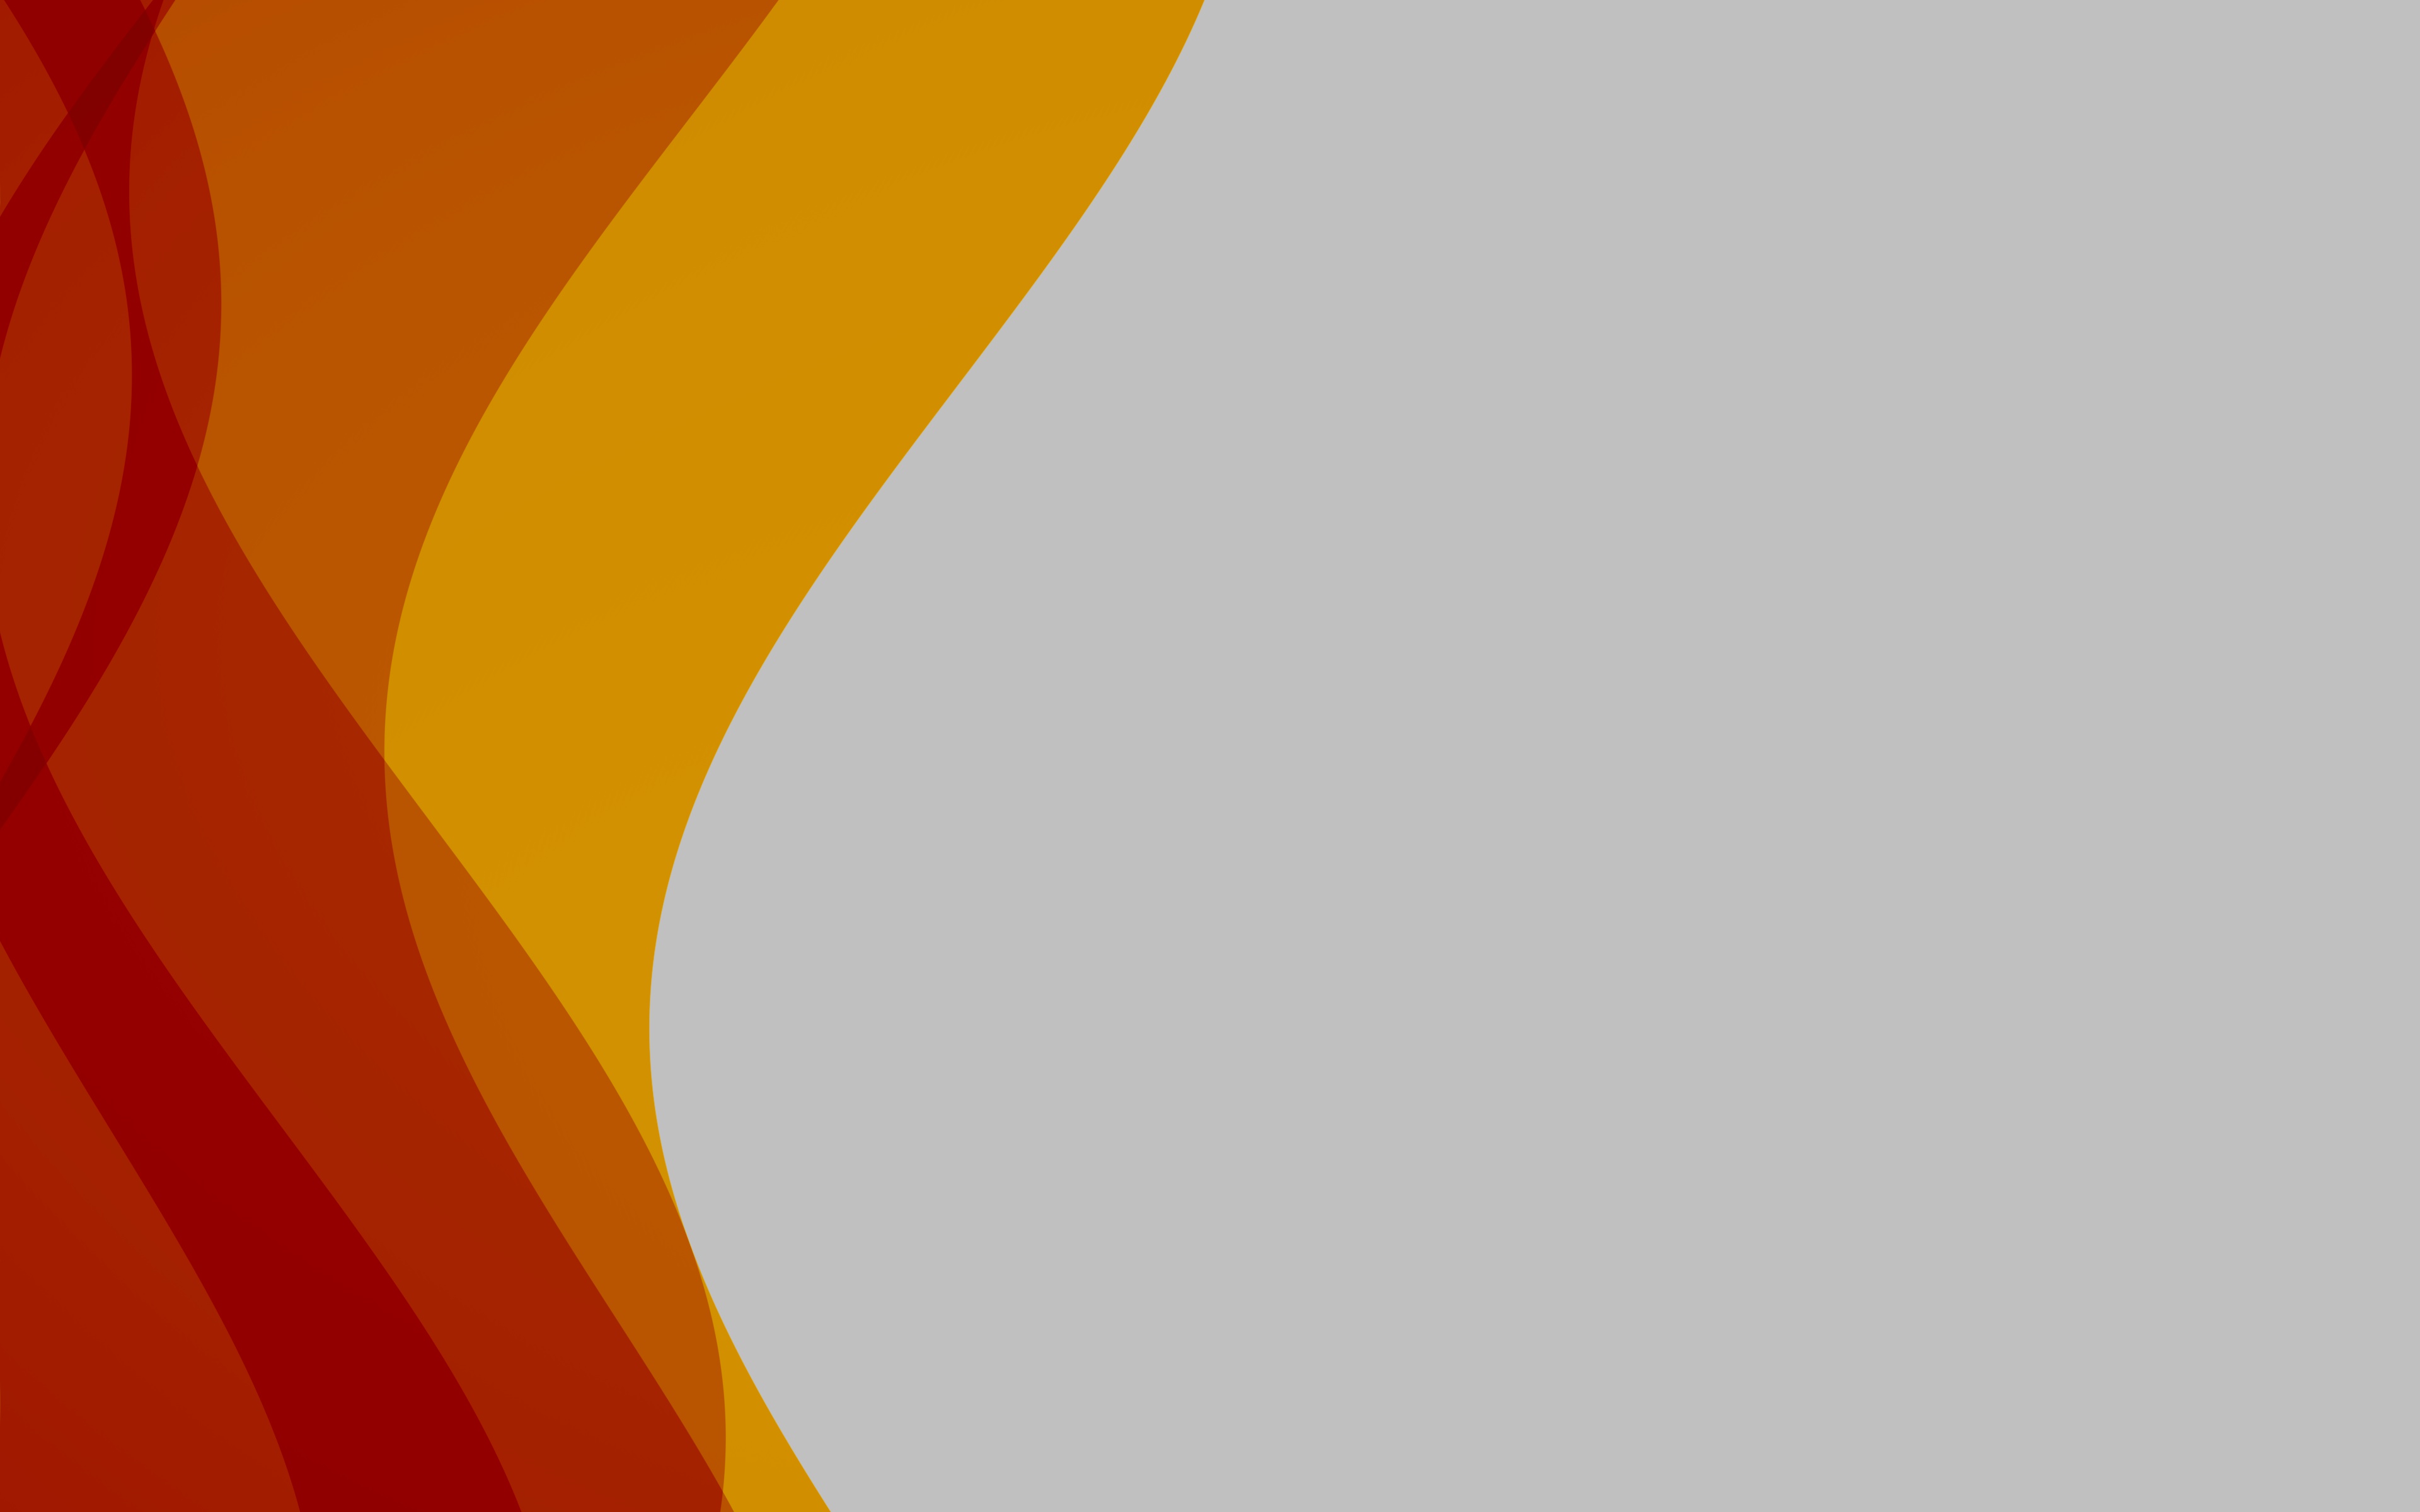 Abstract Ubuntu - Ubuntu 15.10 , HD Wallpaper & Backgrounds